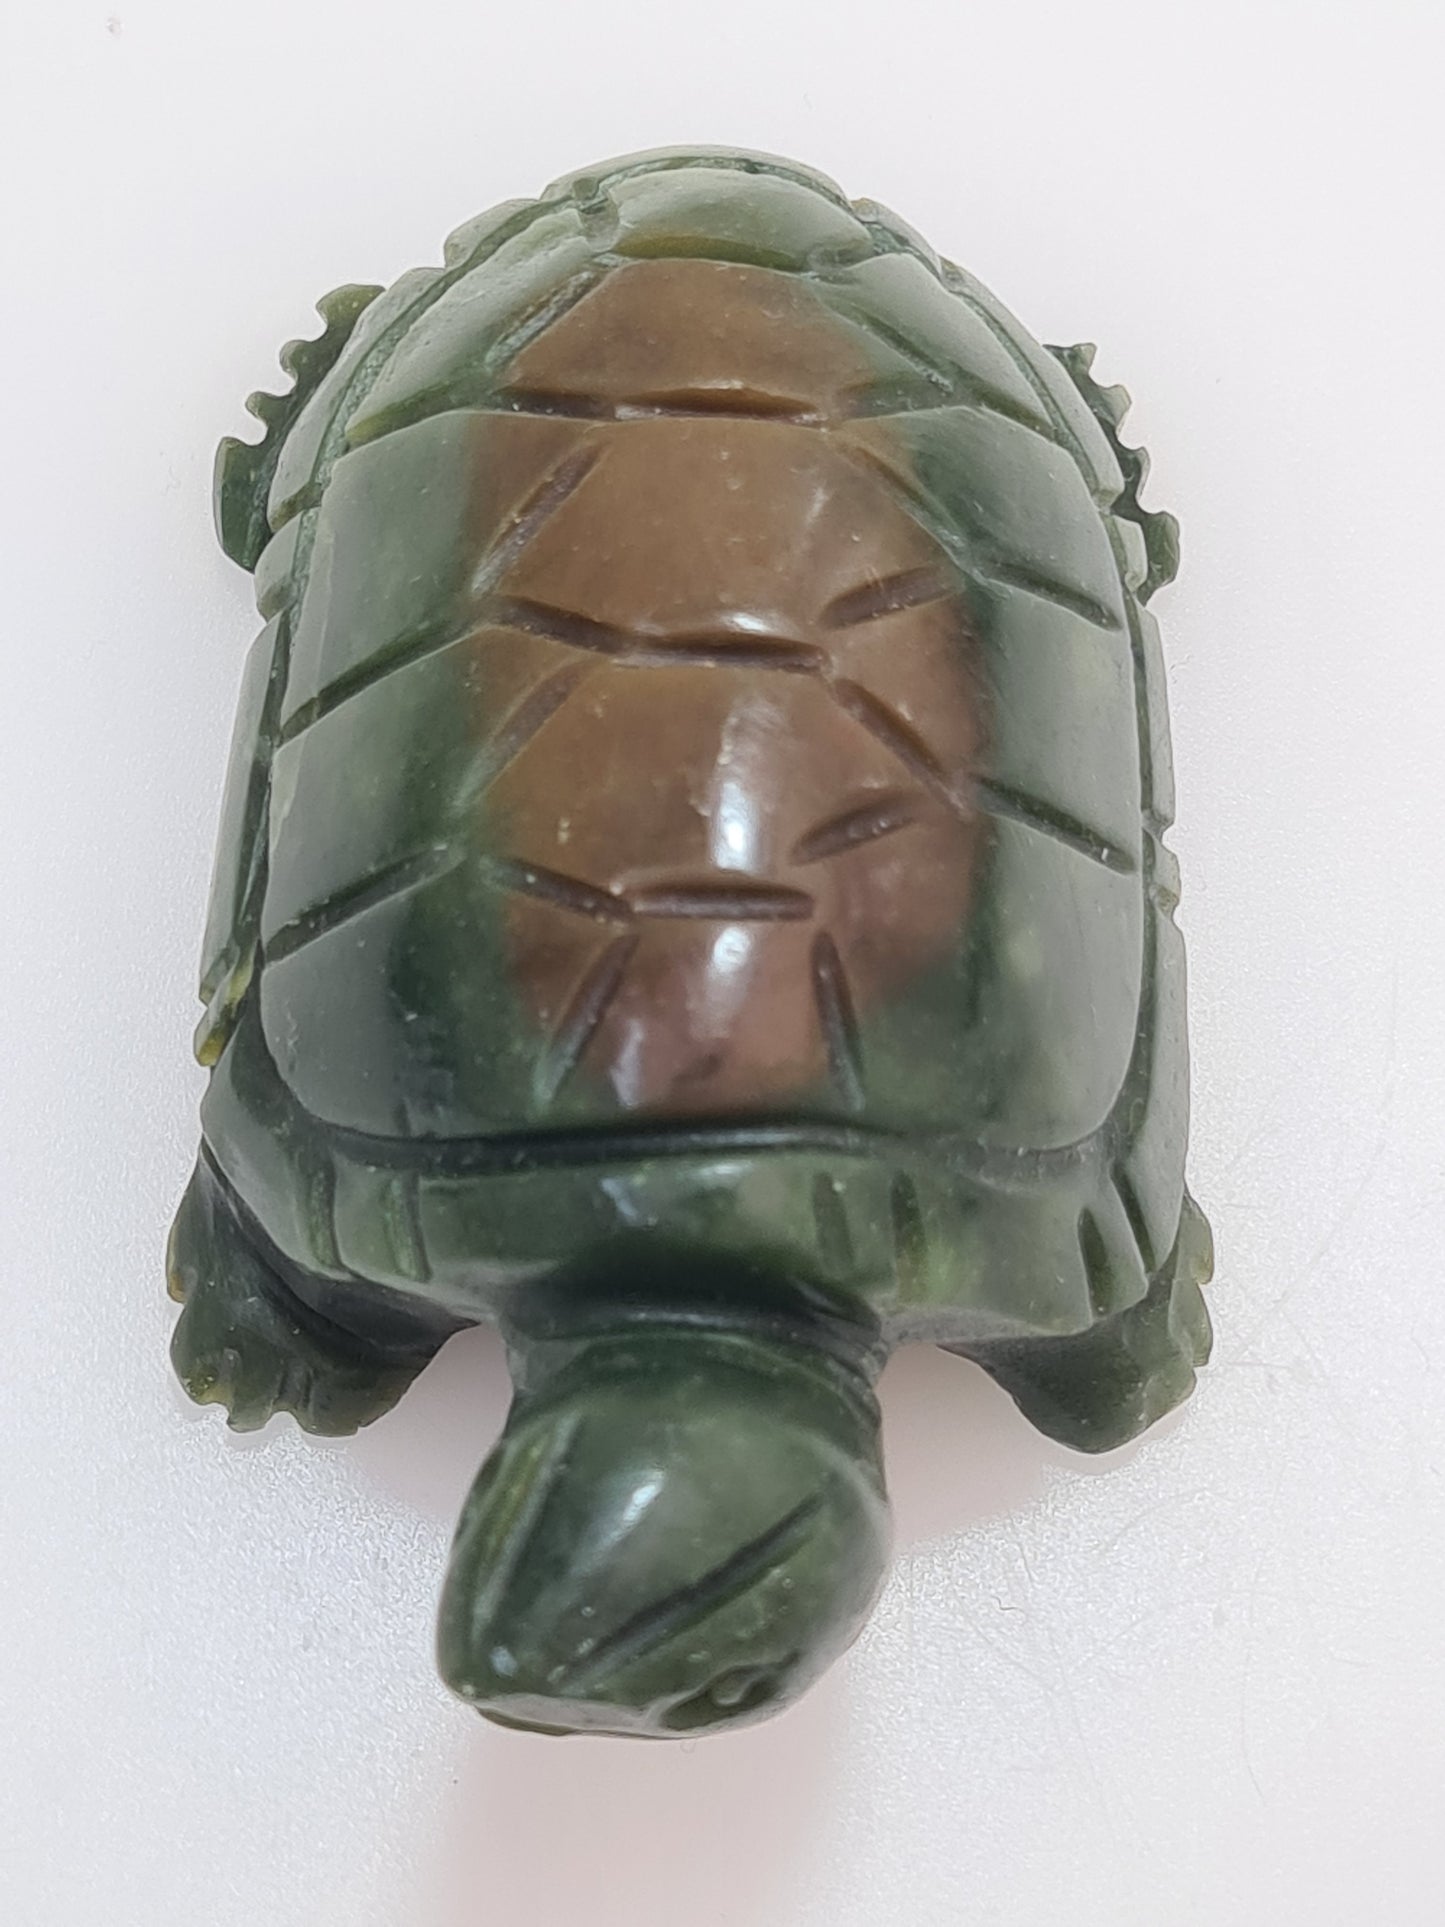 Serpentine Turtle